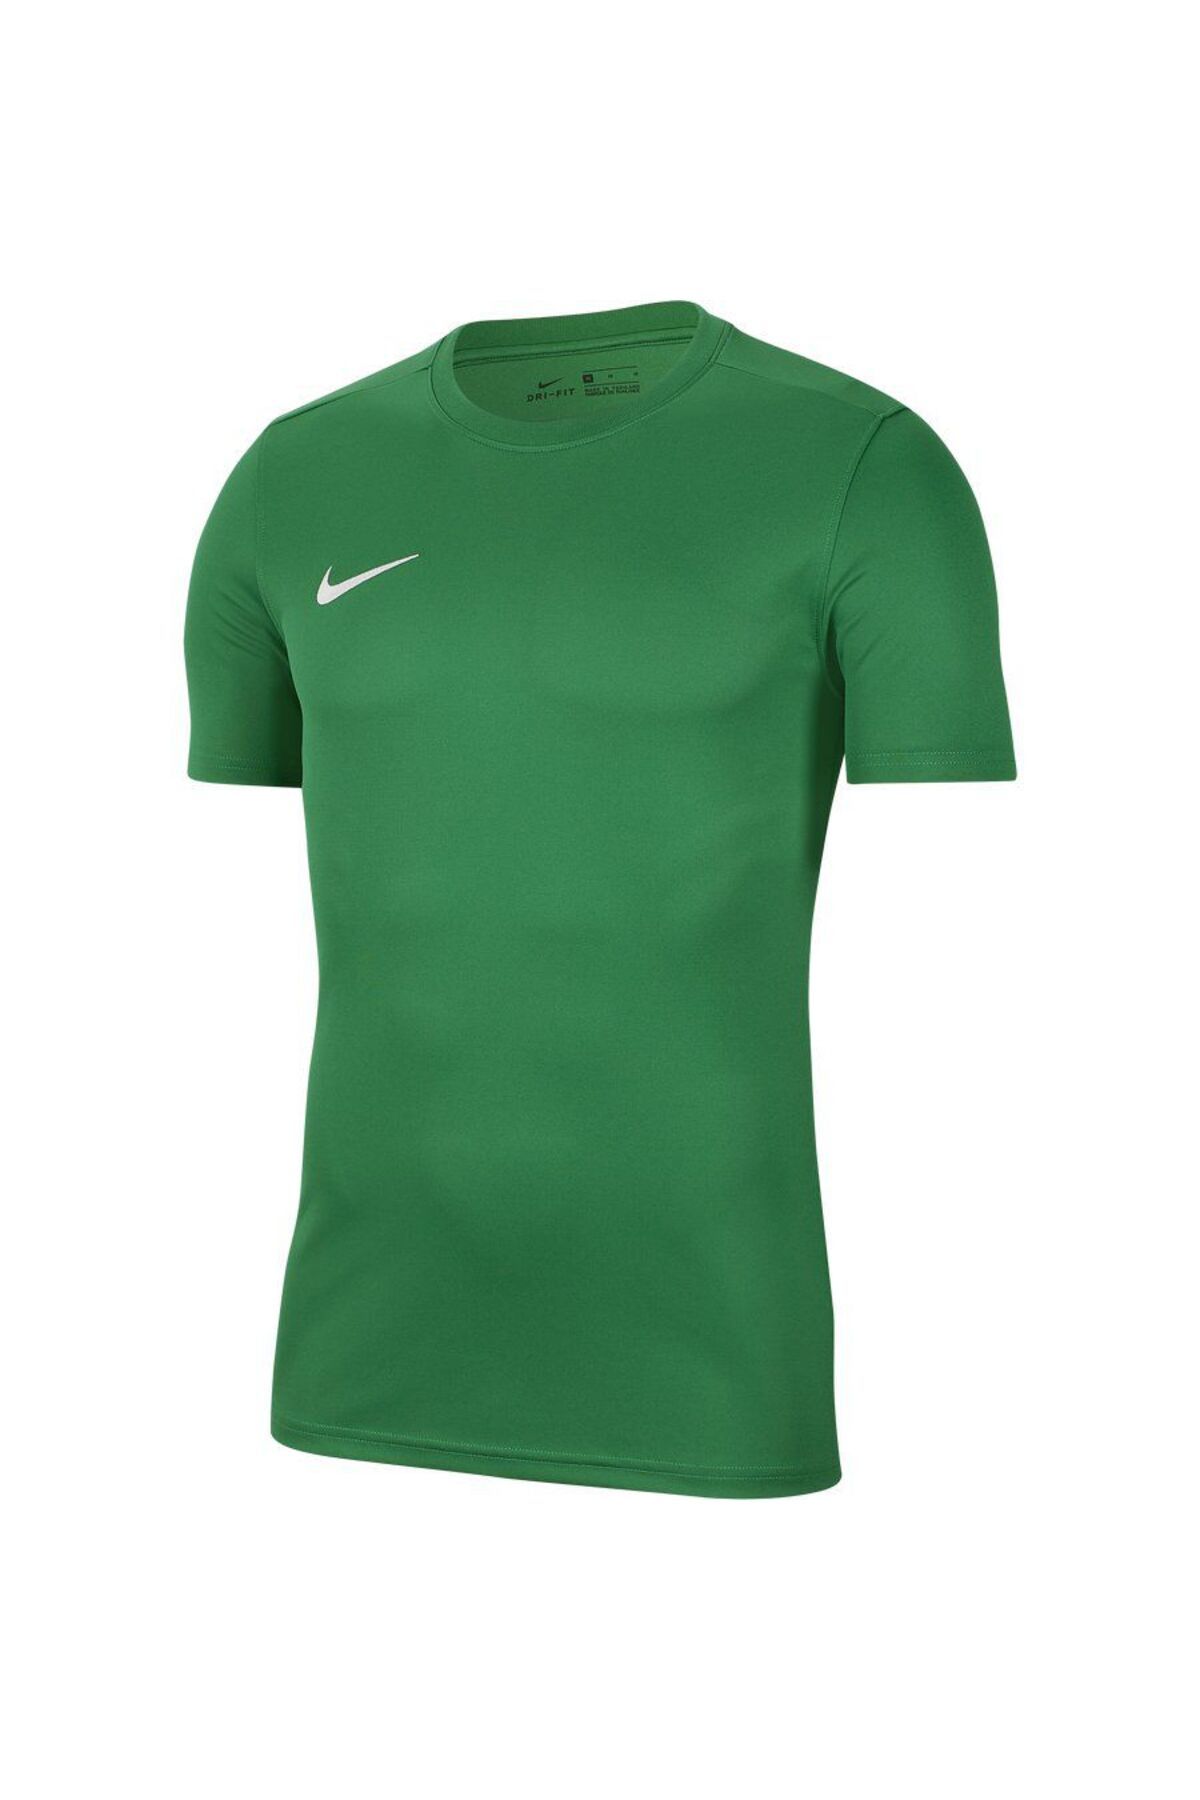 Nike Park Vıı Jersey Yeşil Erkek Forma - Bv6708-302